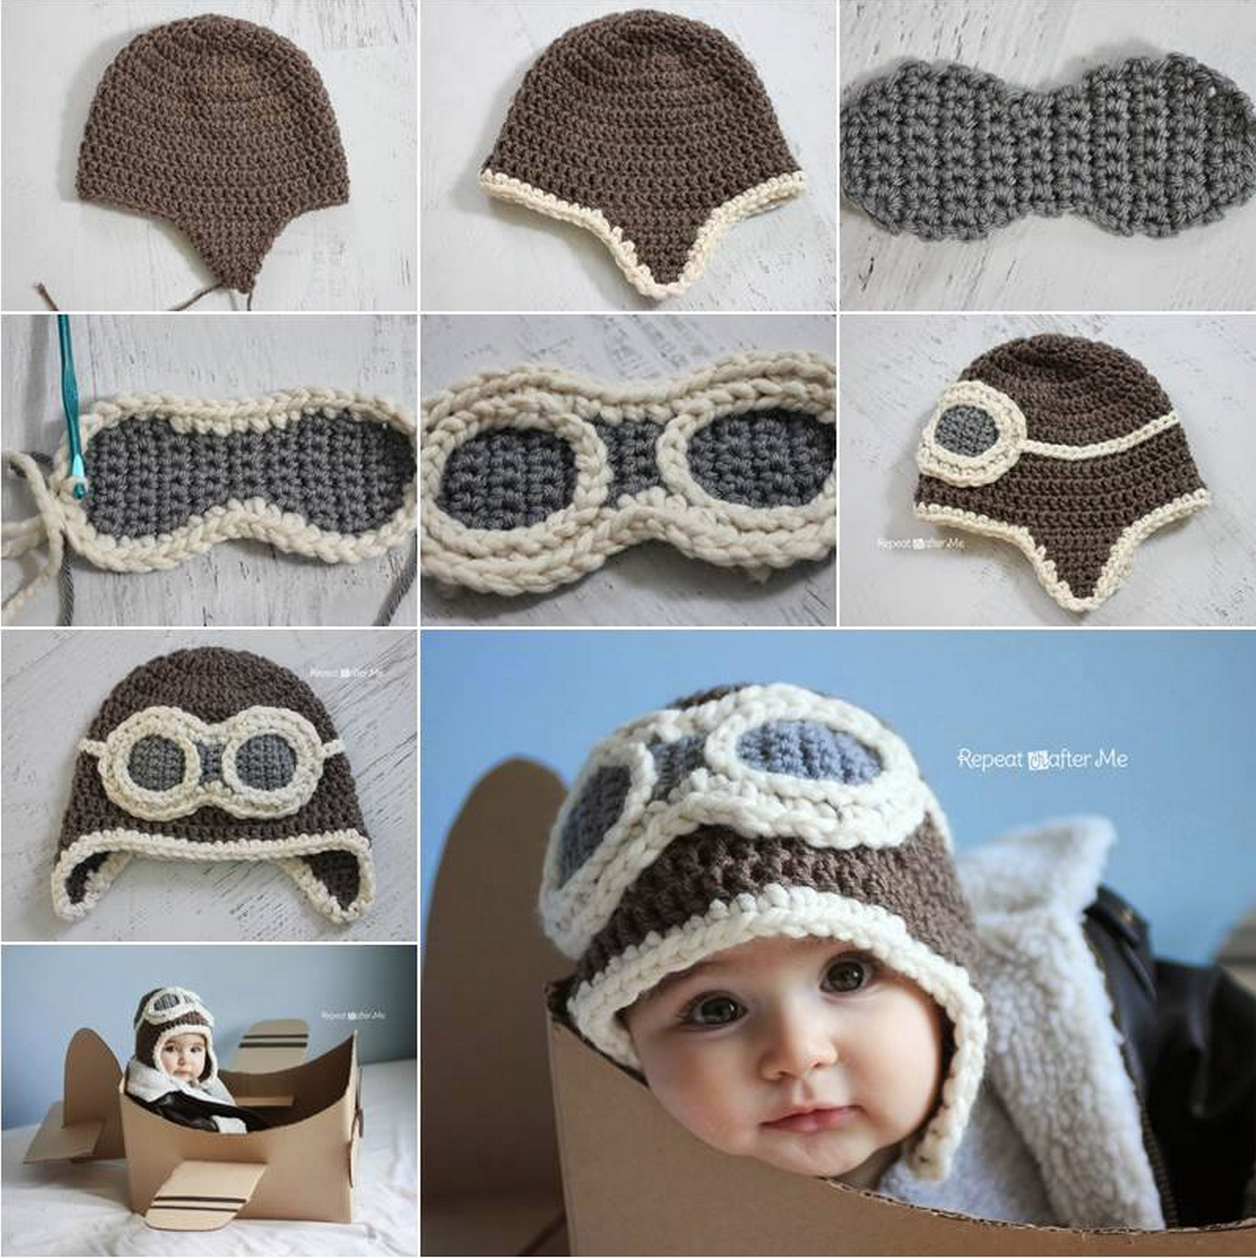 Baby Boy Crochet Hats Free Pattern Crochet Aviator Hat Youtube Video Lots Of Free Pattern Crochet